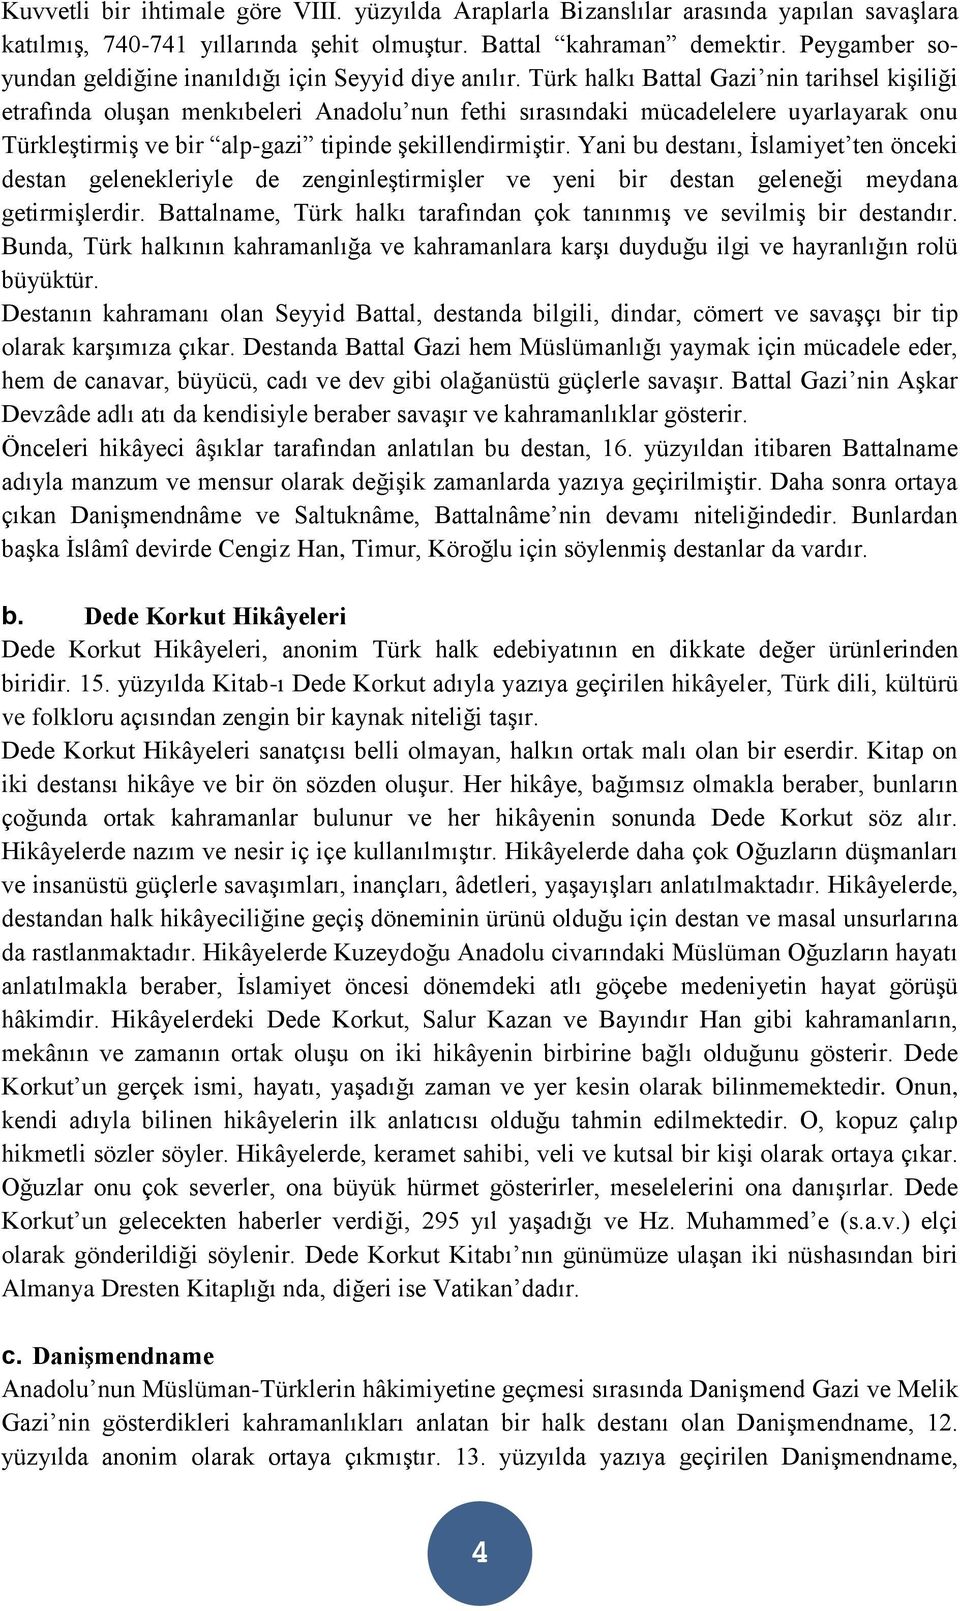 Türk halkı Battal Gazi nin tarihsel kişiliği etrafında oluşan menkıbeleri Anadolu nun fethi sırasındaki mücadelelere uyarlayarak onu Türkleştirmiş ve bir alp-gazi tipinde şekillendirmiştir.